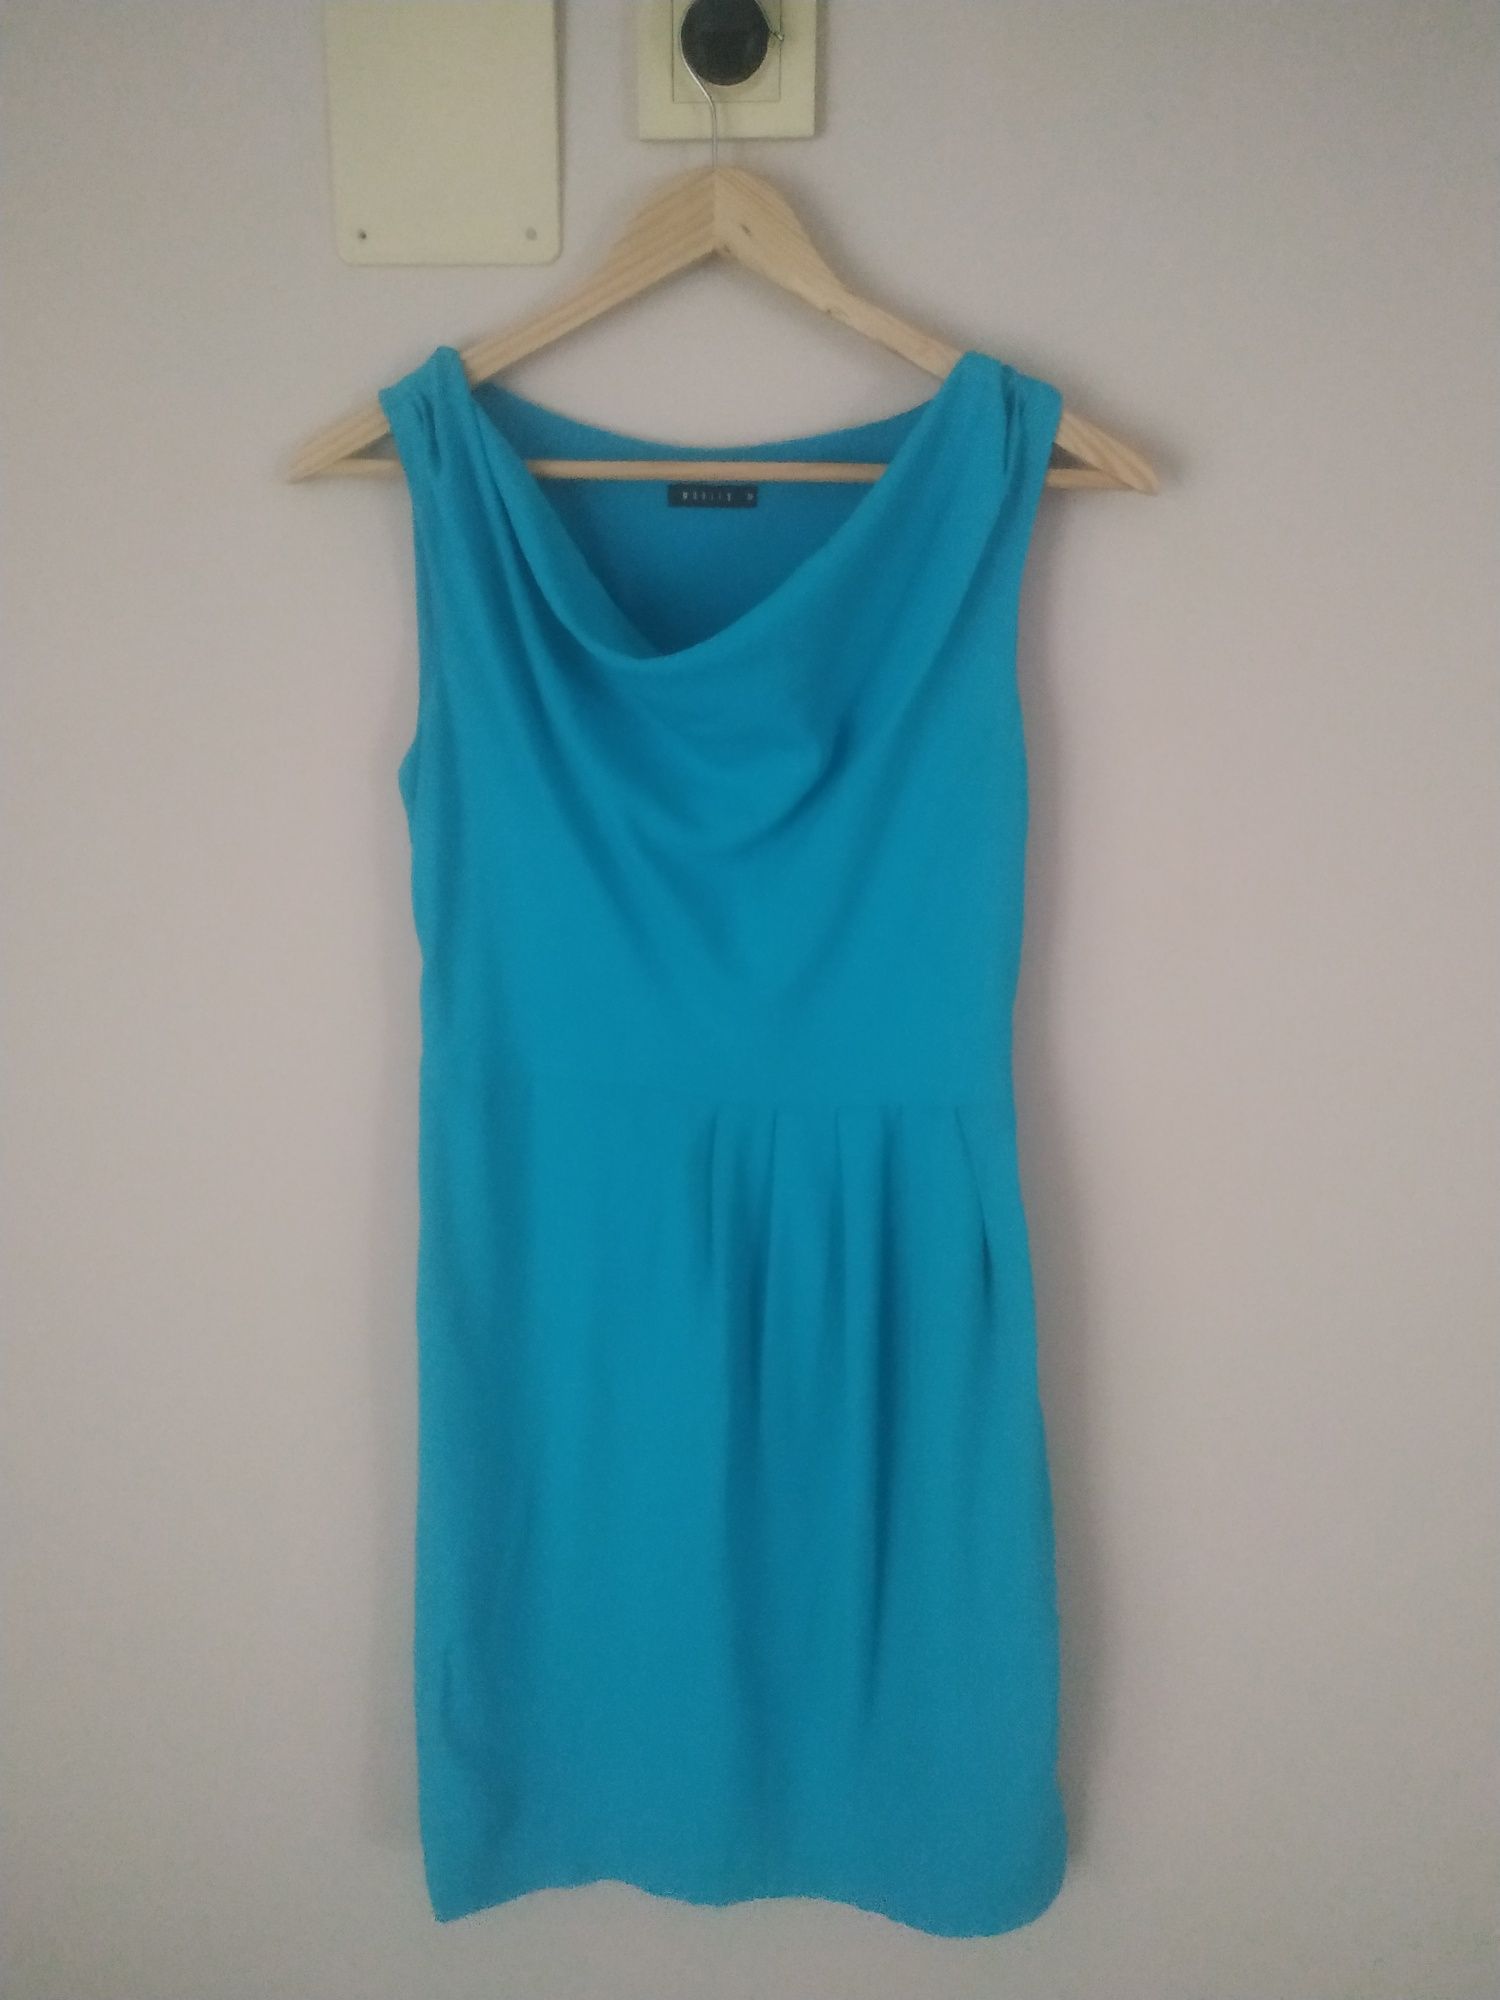 niebieska sukienka krótki rękaw uniwersalna mohito rozmiar 34 pasek